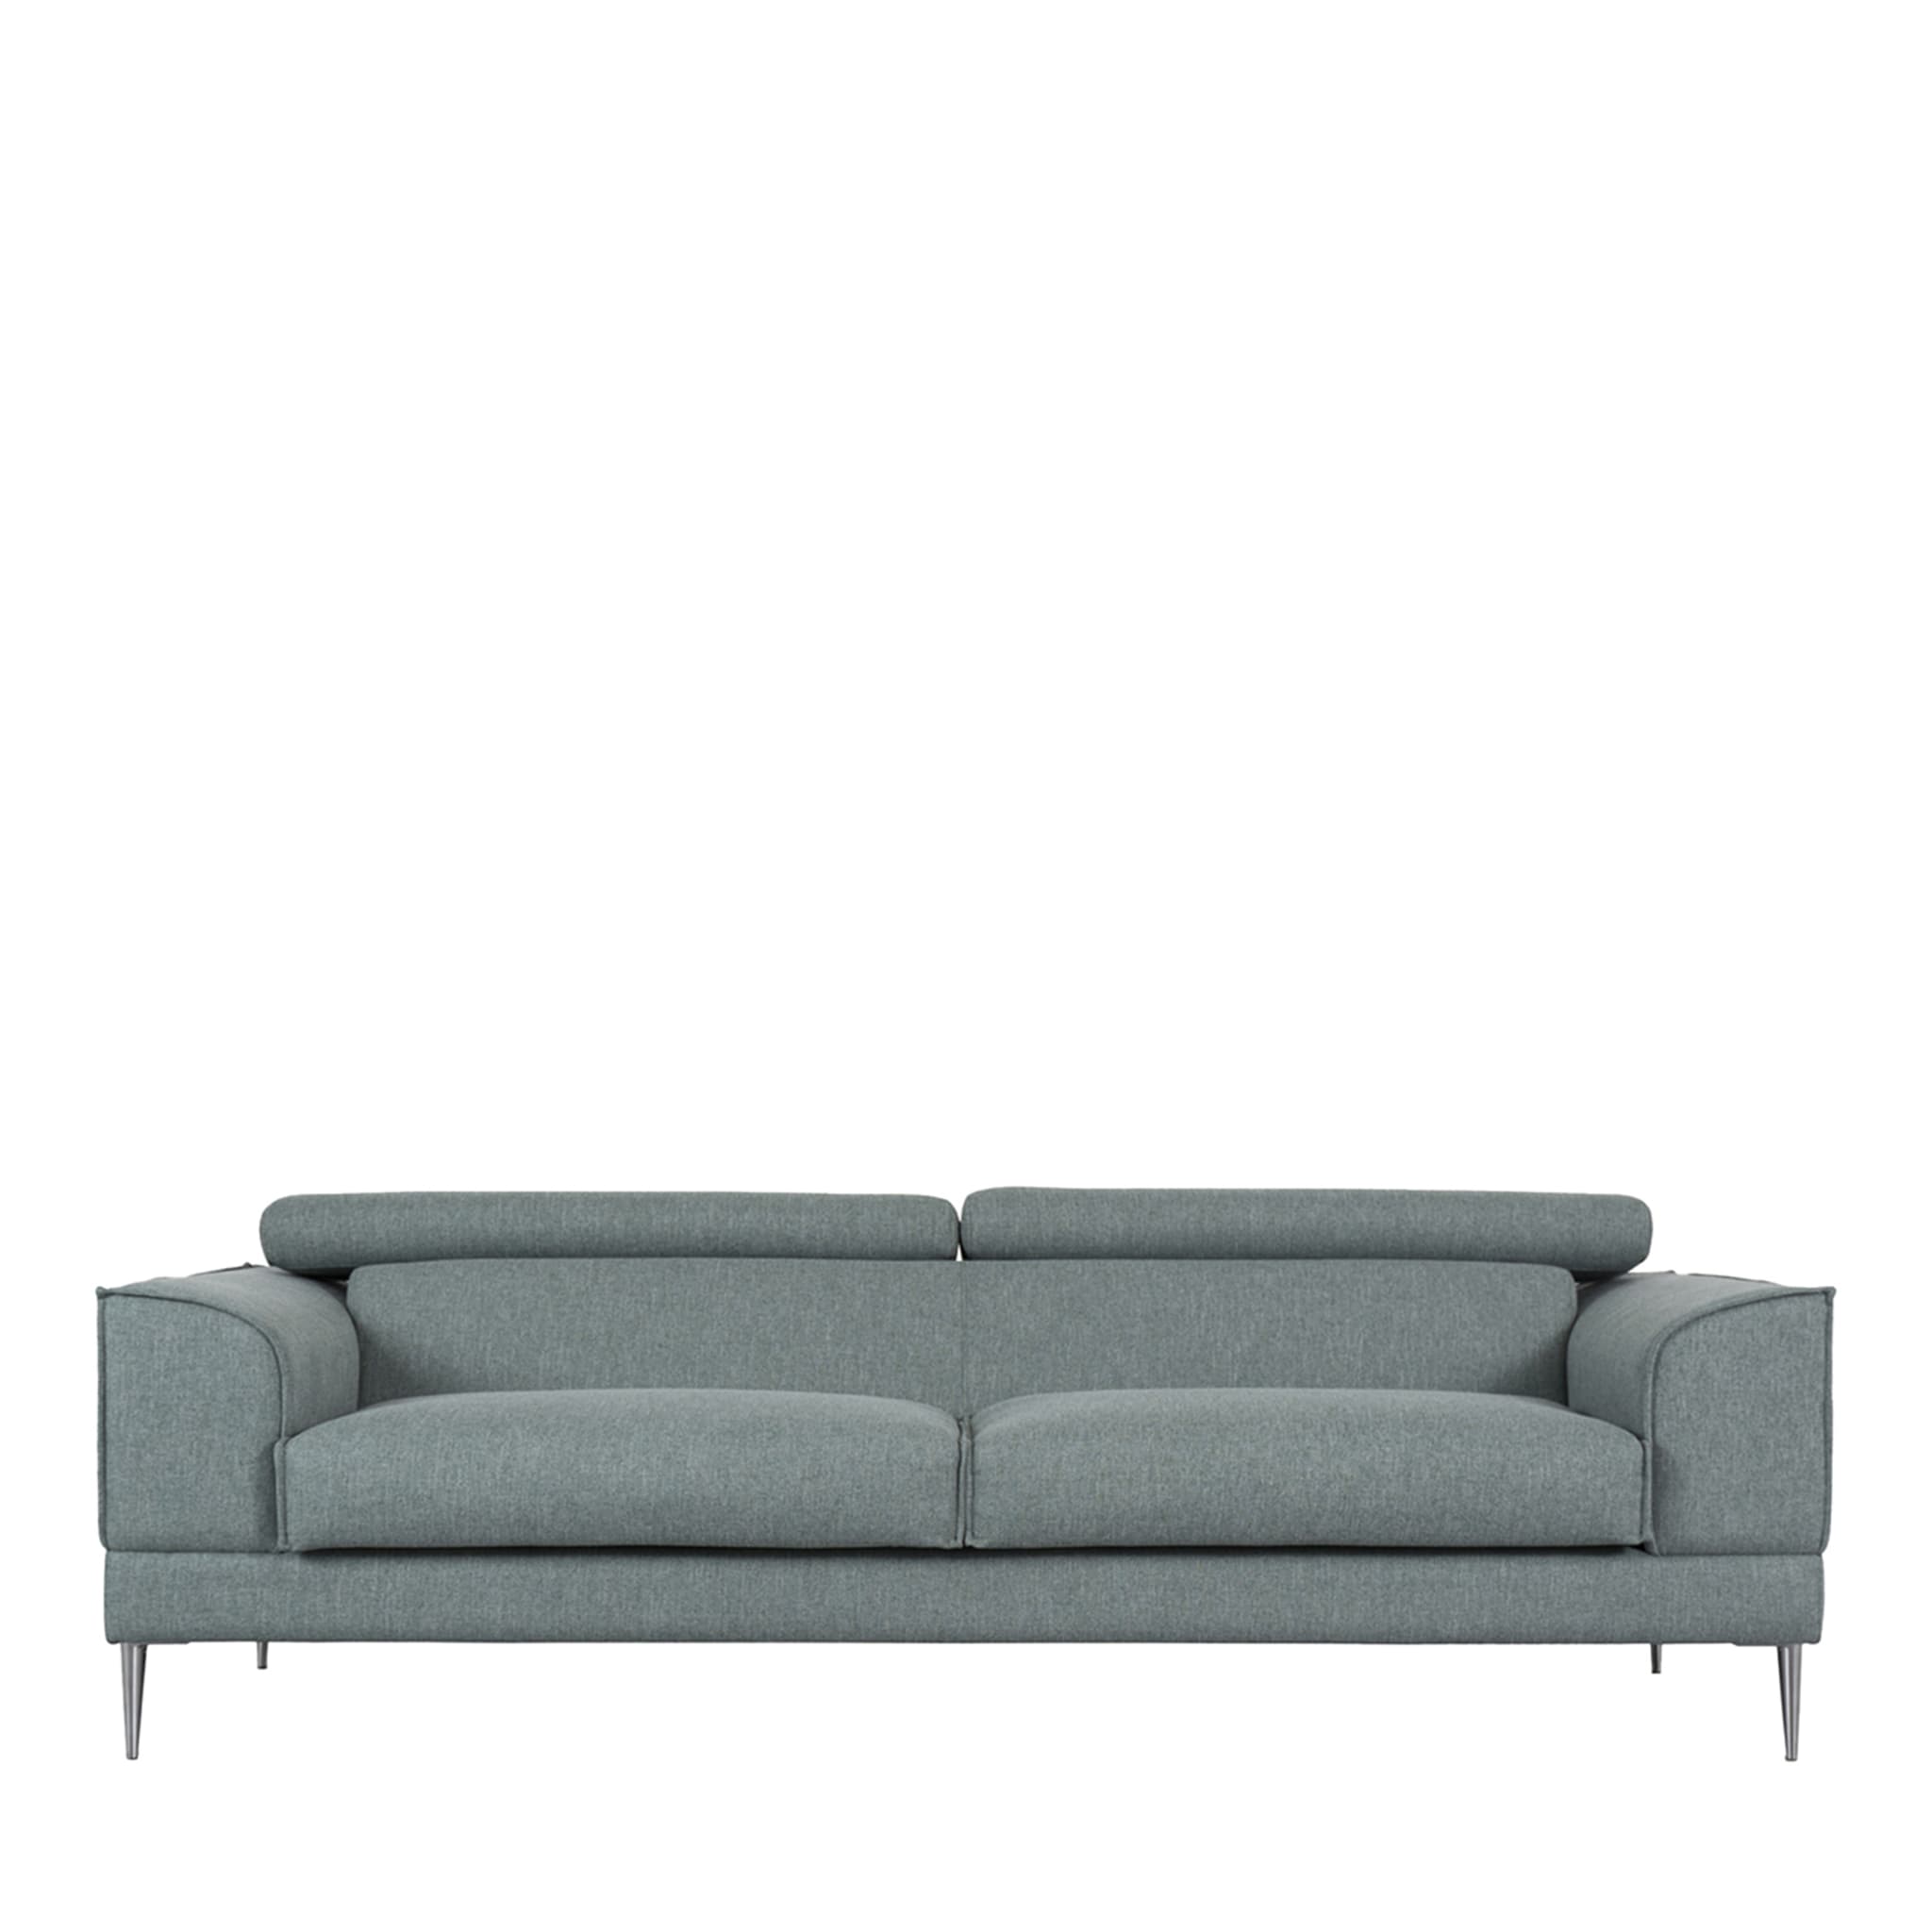 Tiffany Gray Sofa - Main view